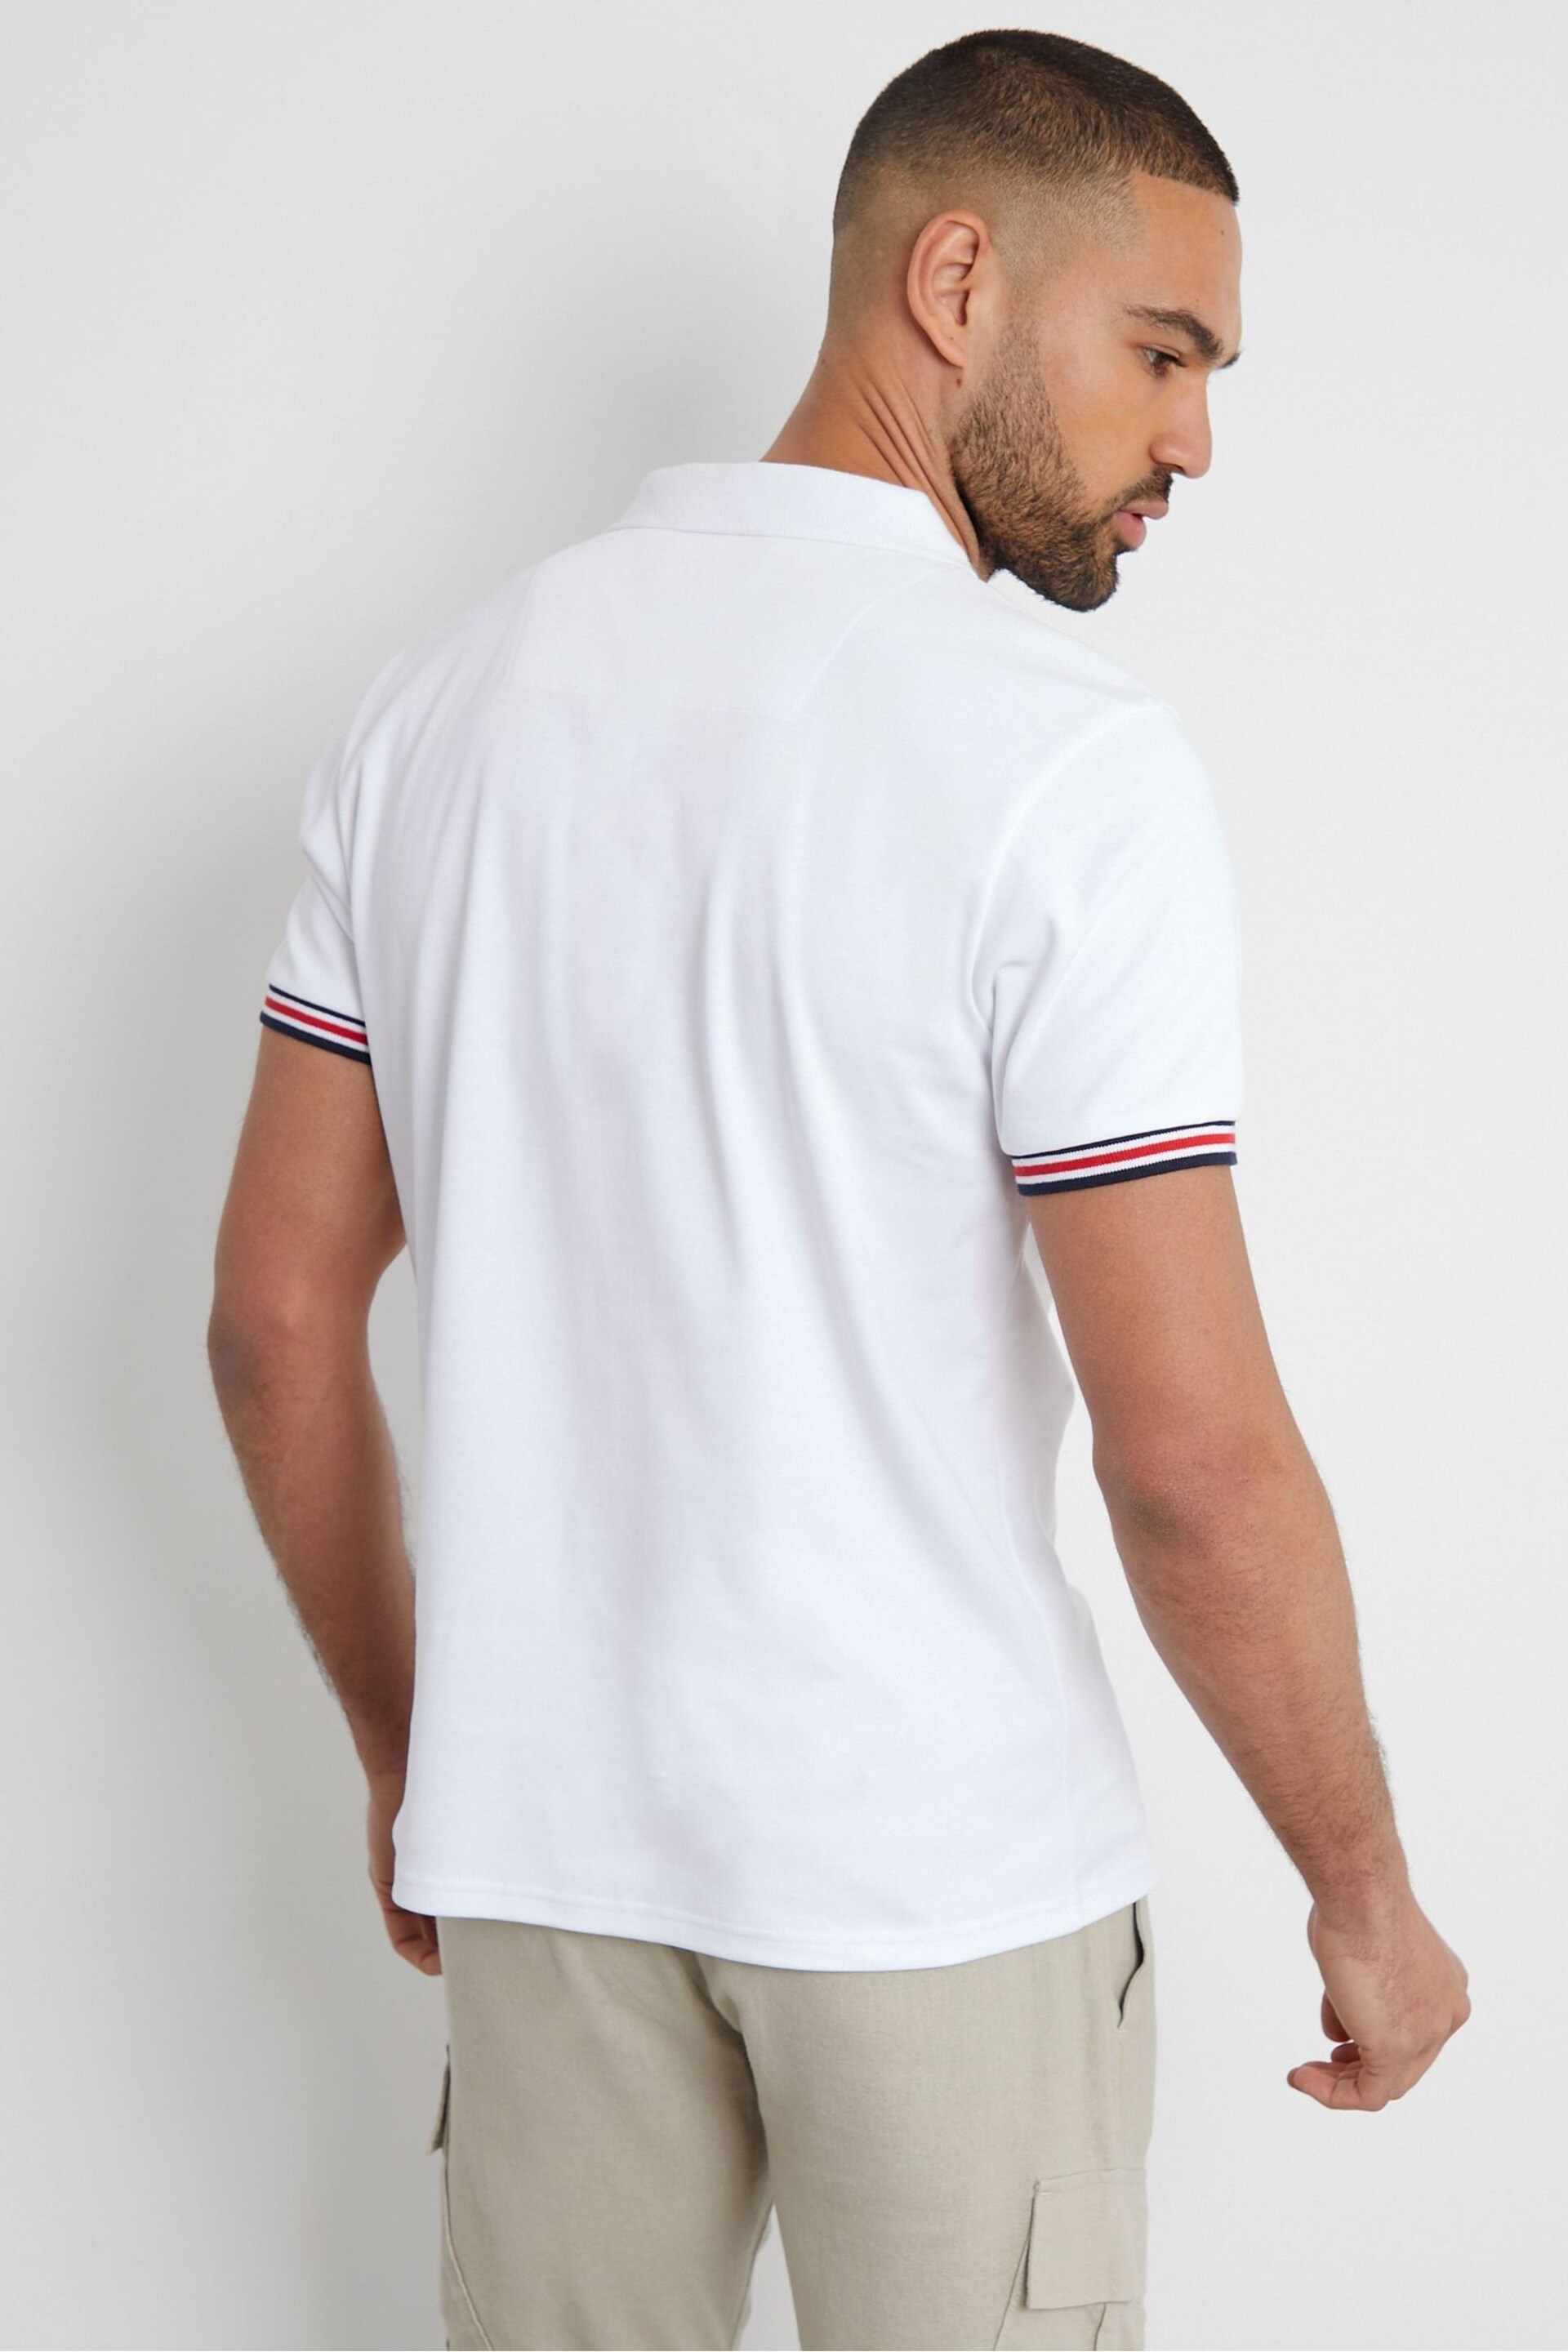 Threadbare White Open Collar Pique Polo Shirt - Image 2 of 3